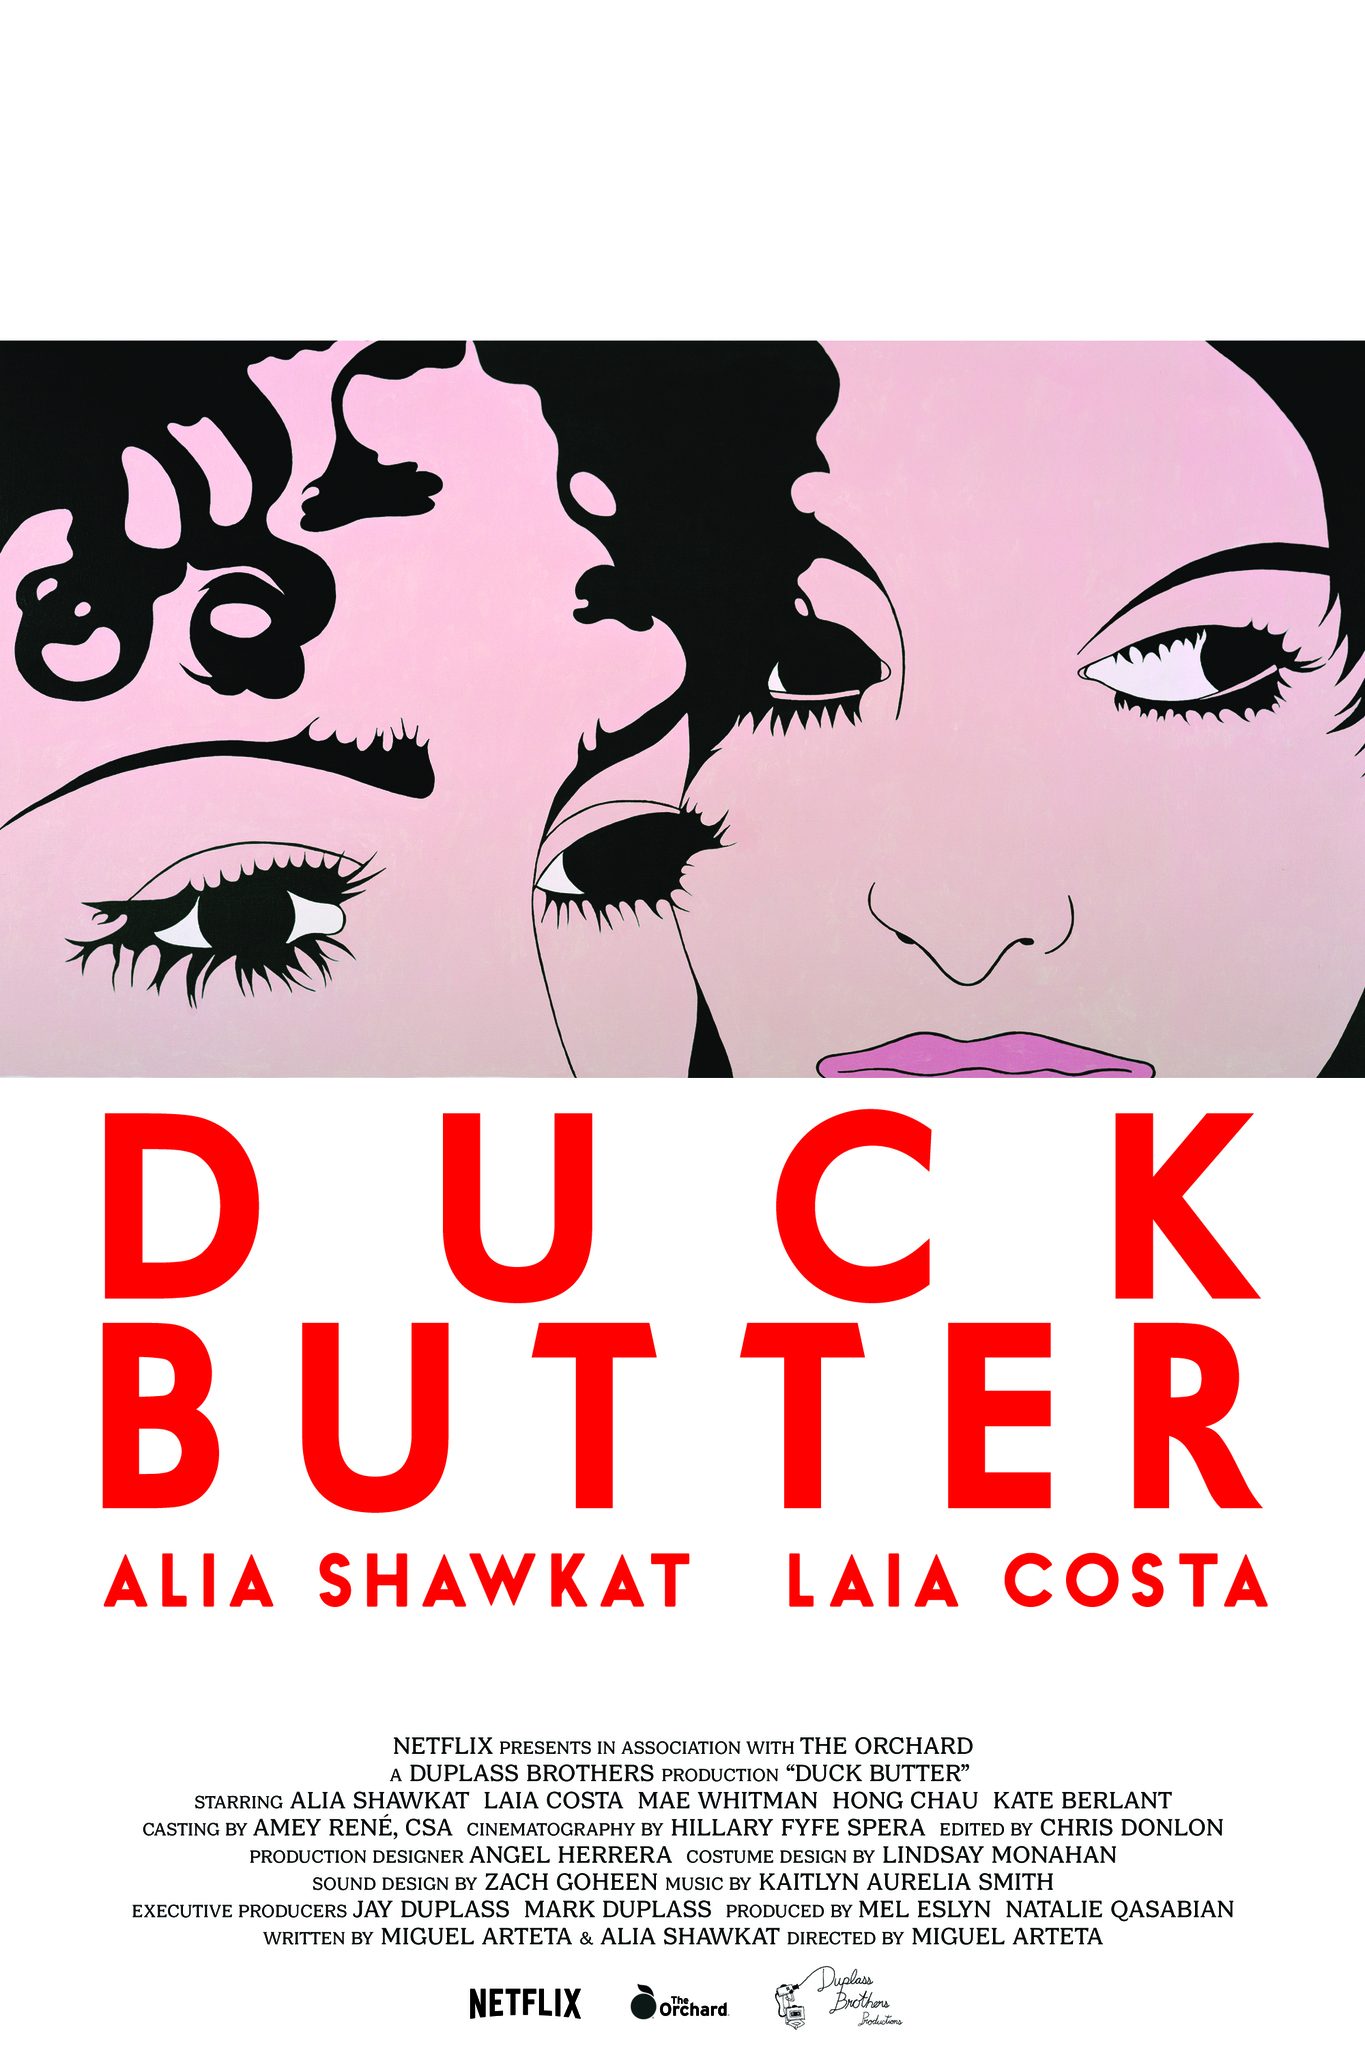 Nonton film Duck Butter layarkaca21 indoxx1 ganool online streaming terbaru